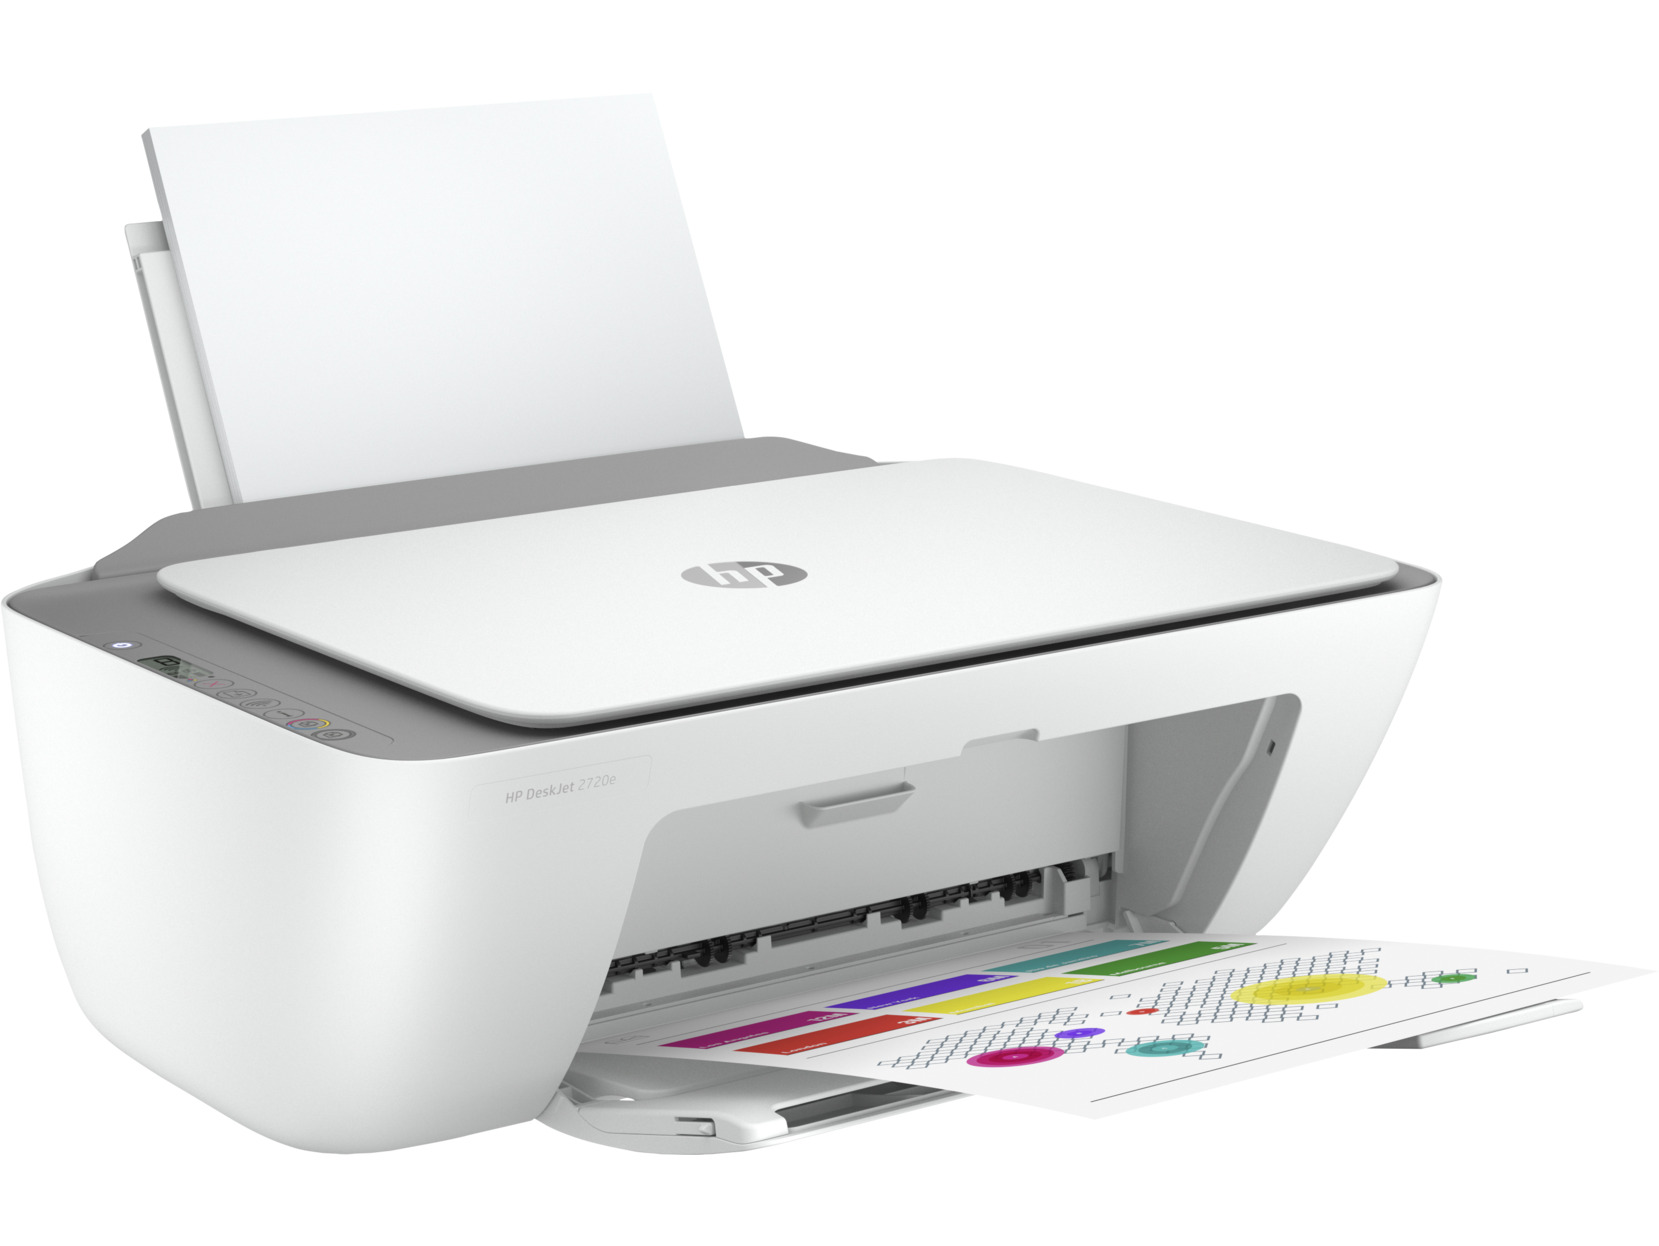 HP - Impressora Jato de Tinta HP DeskJet 2720e All-In-ONE WiFi